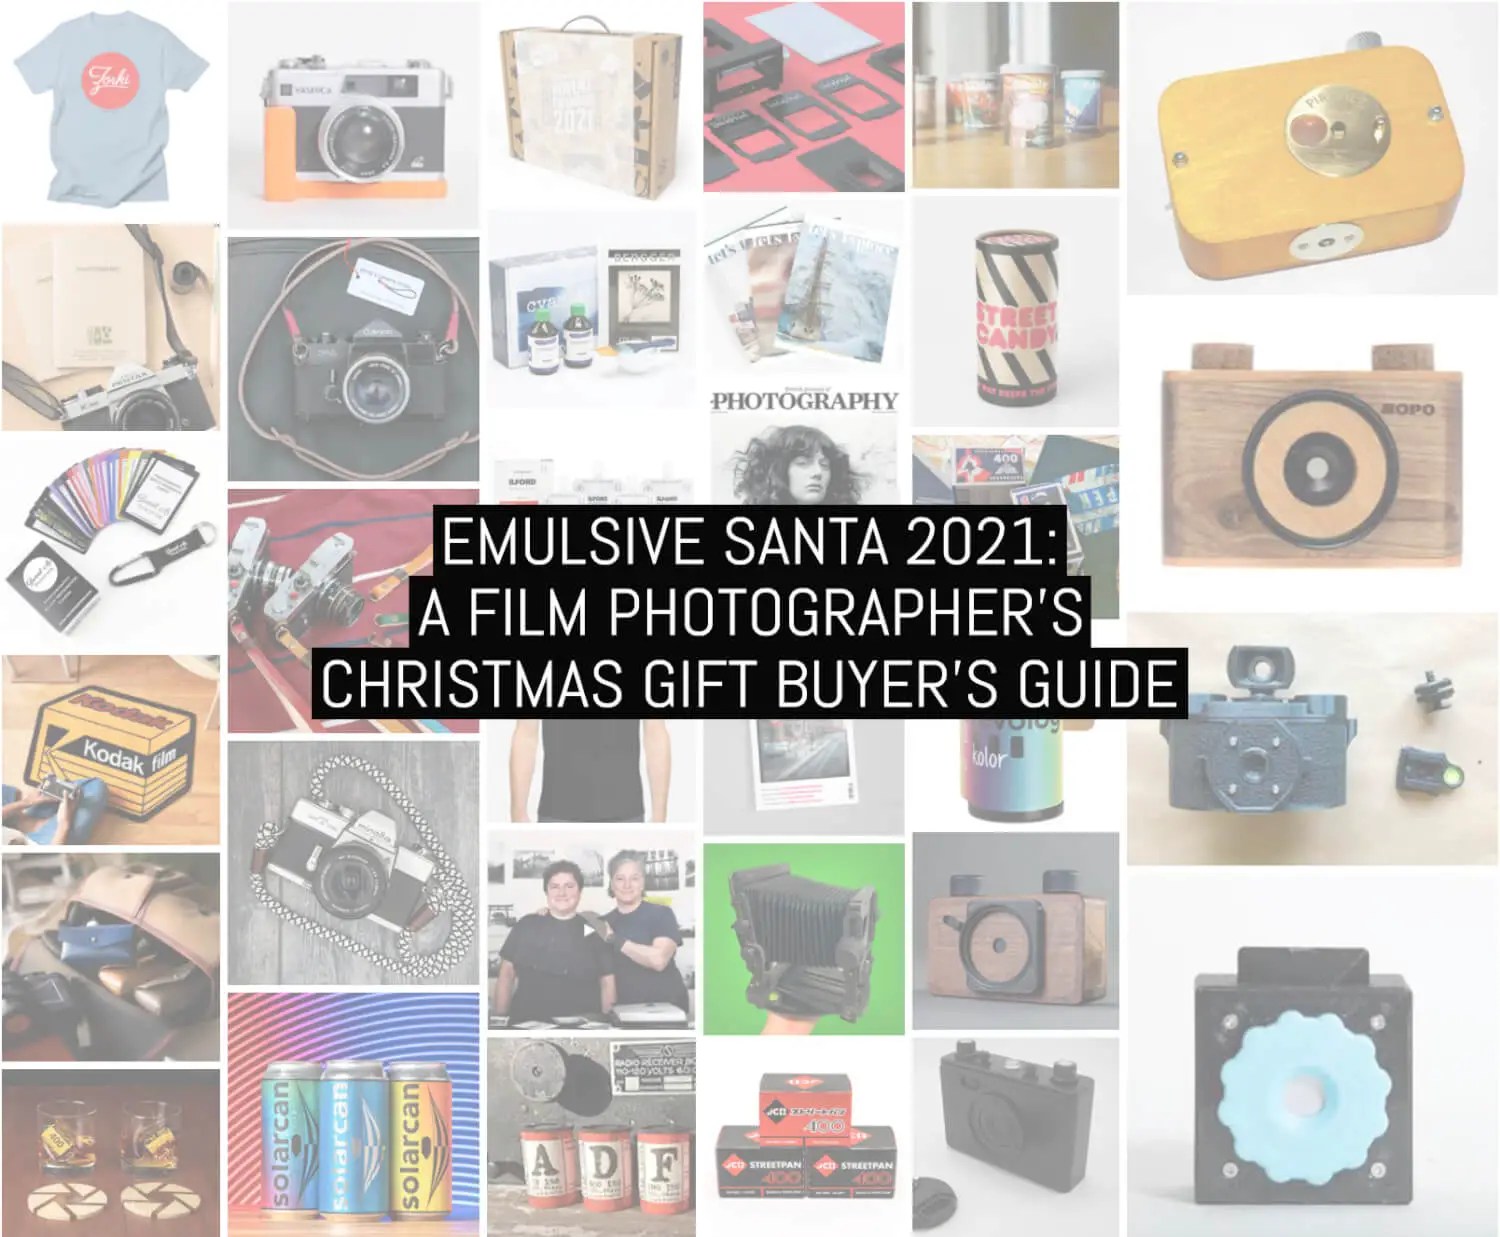 EMULSIVE Santa 2021: A film photographer’s Christmas gift buyer’s guide + 3 days left to register